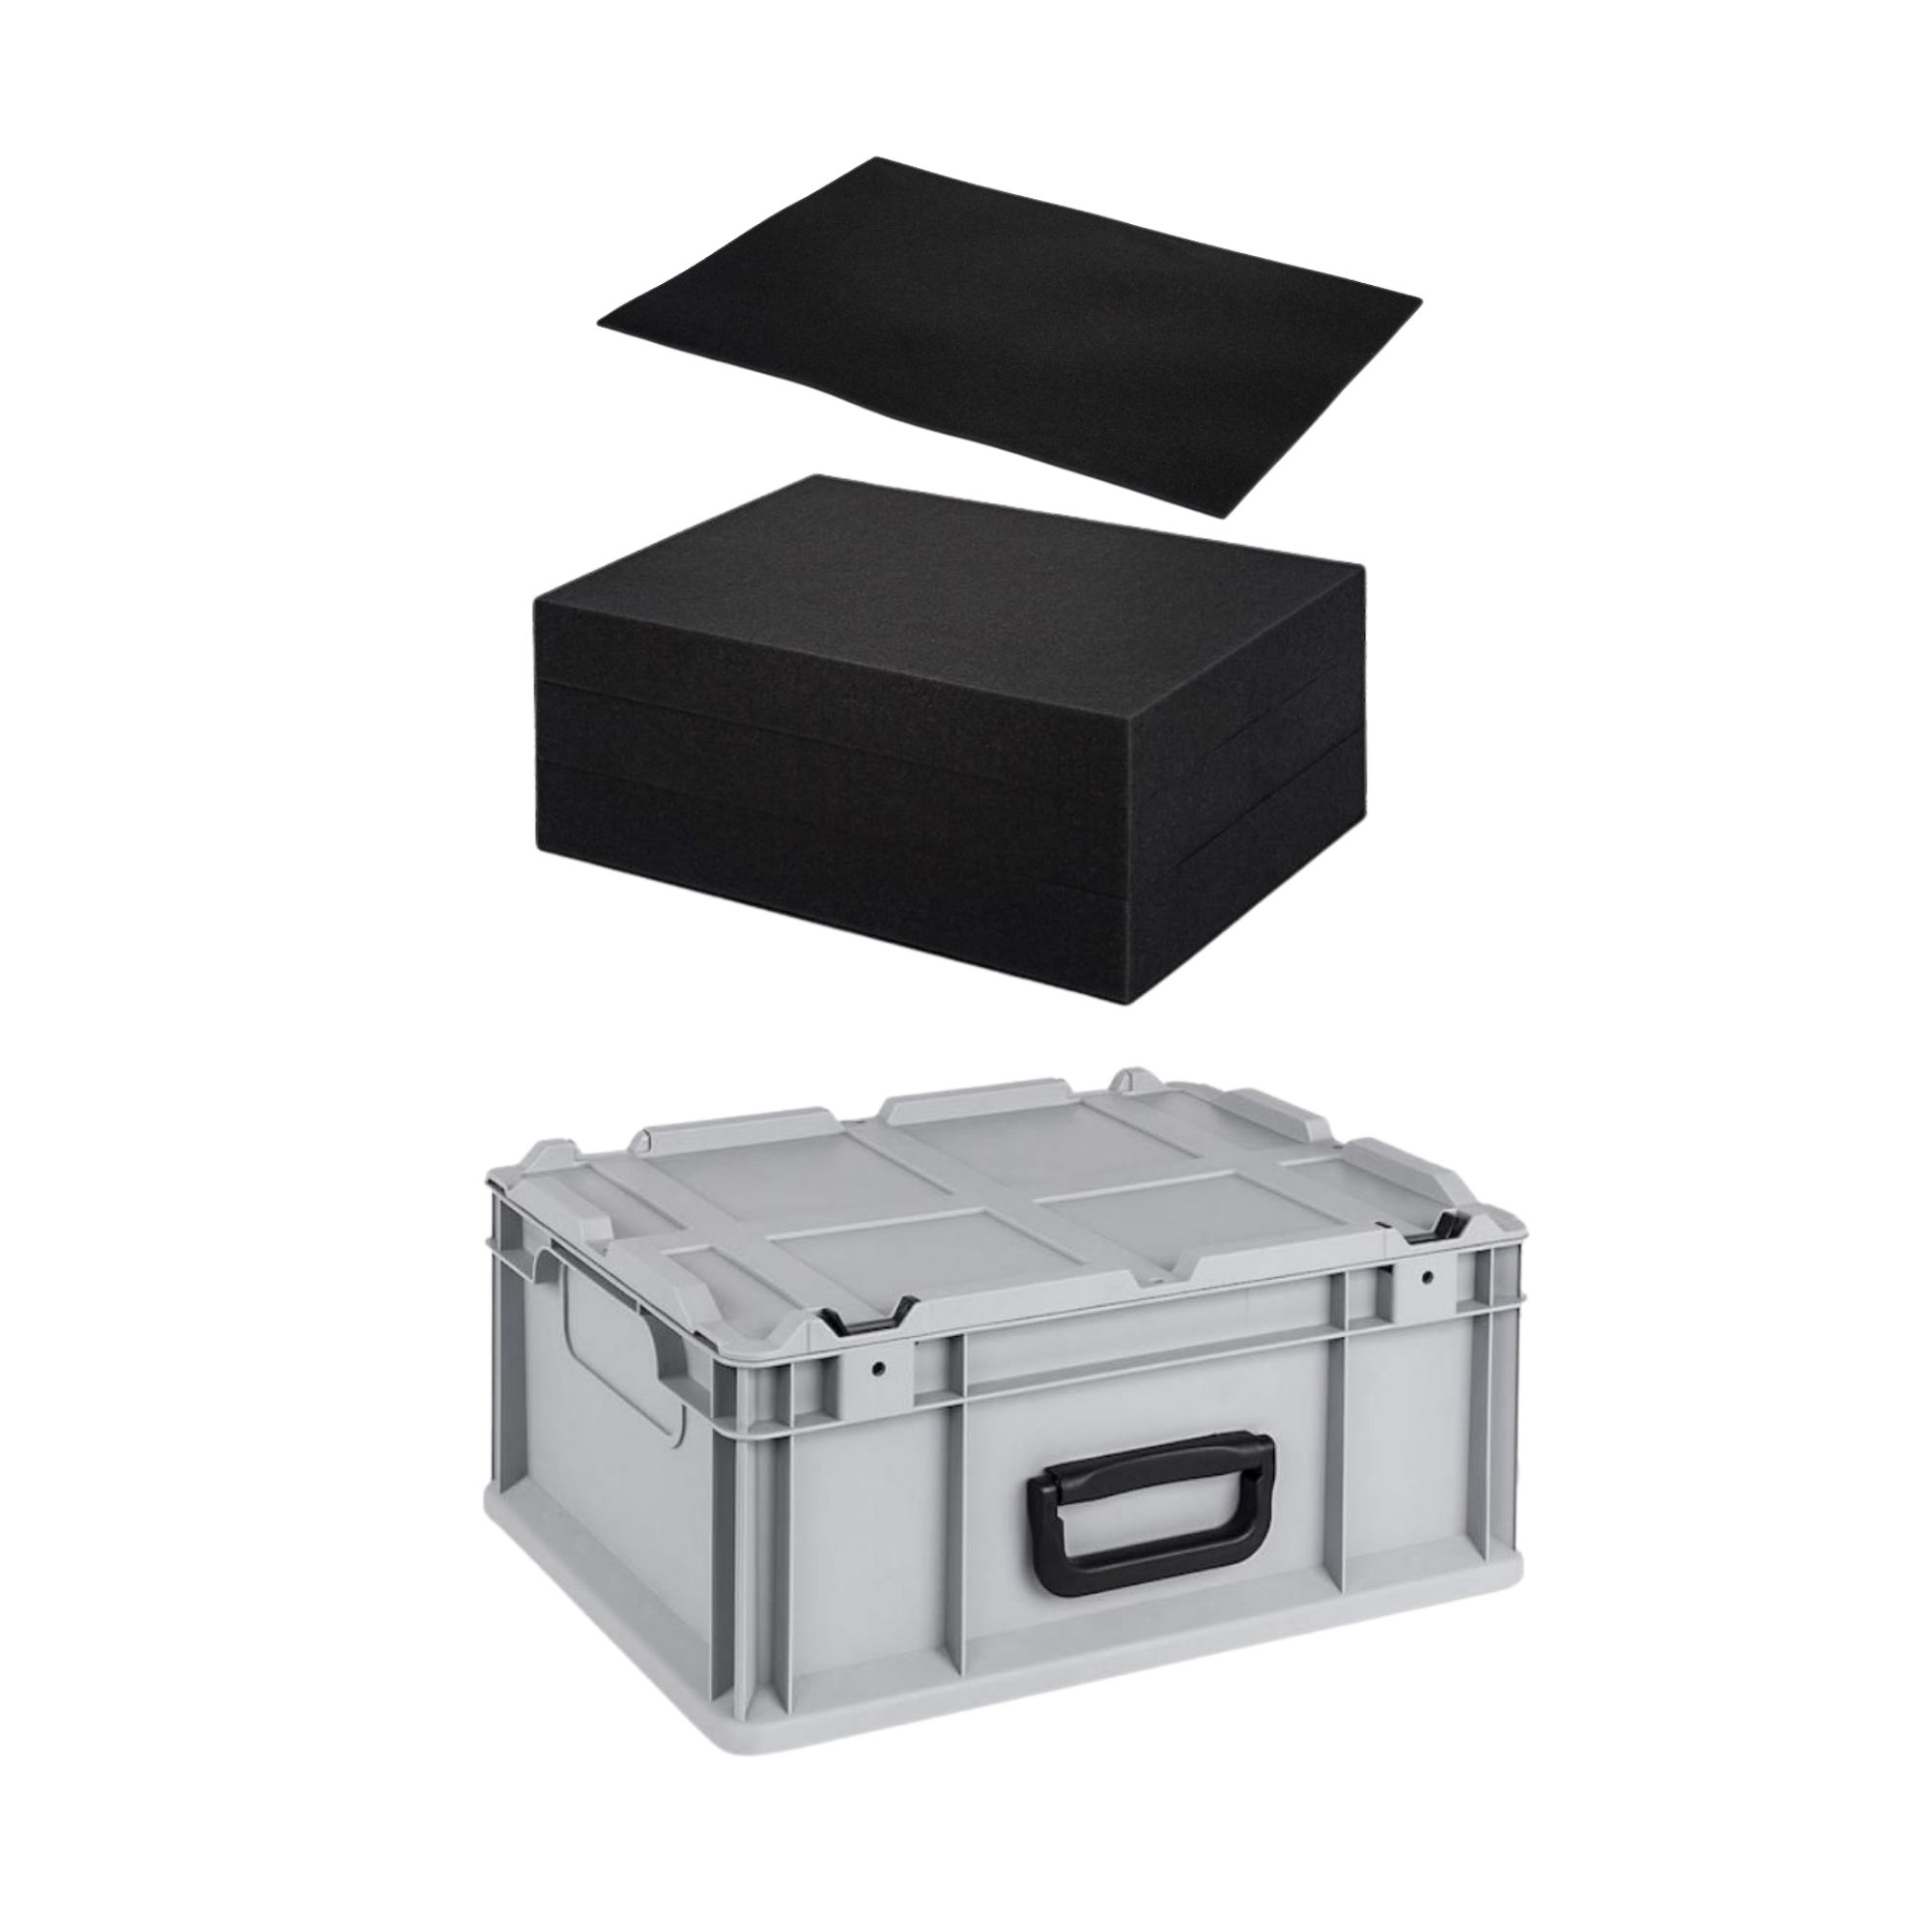 Eurobox NextGen Portable mit Rasterschaumstoff & Schaumstoffeinlage | HxBxT 18,5x30x40cm |16 Liter | Eurobehälter, Transportbox, Transportbehälter, Stapelbehälter